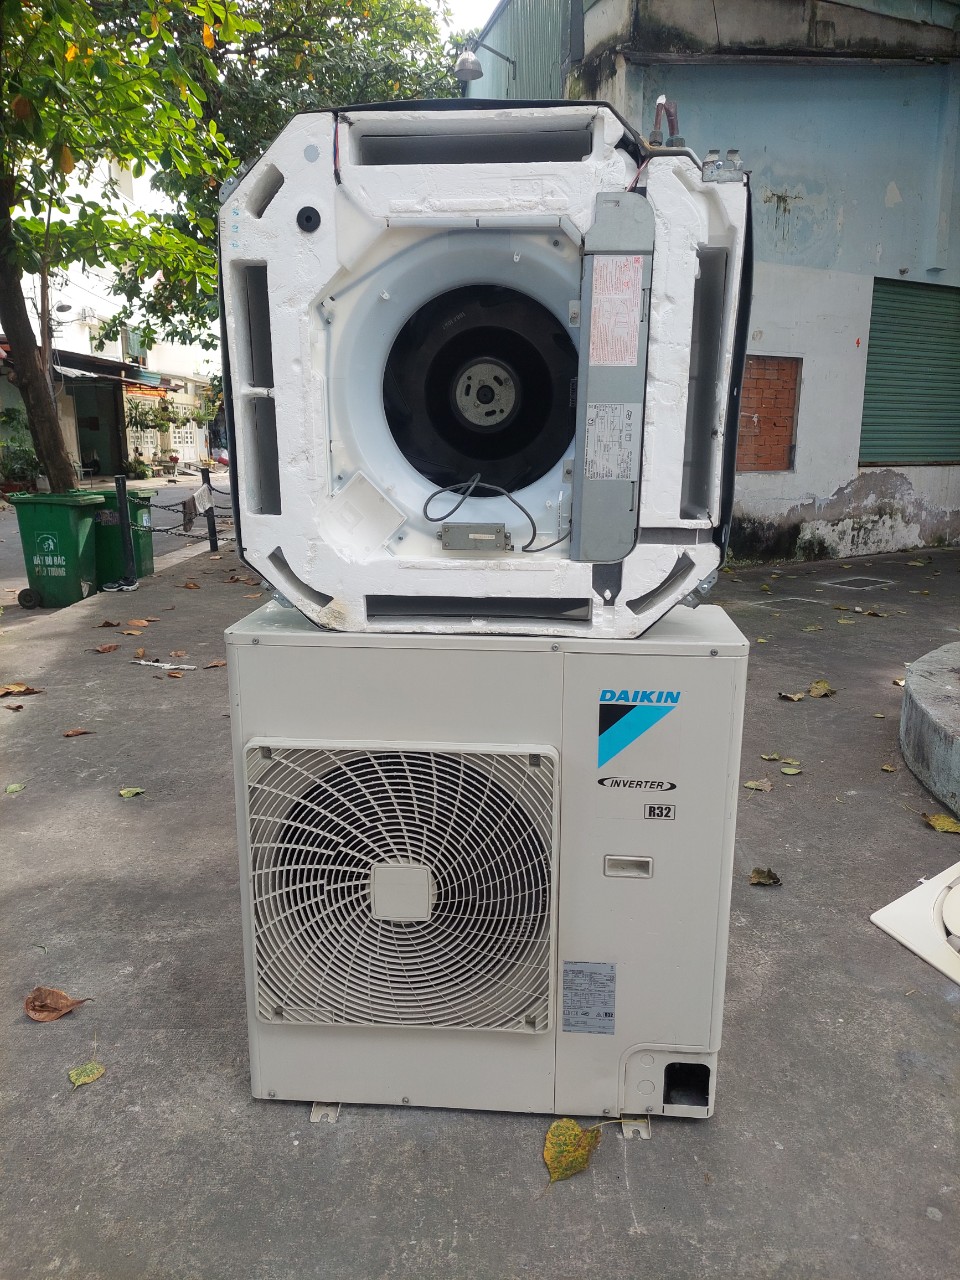 Thanh lý - bán máy lạnh cũ ở Đồng Nai là một đơn vị chuyên về dịch vụ thu mua máy lạnh cũ tại Đồng Nai.